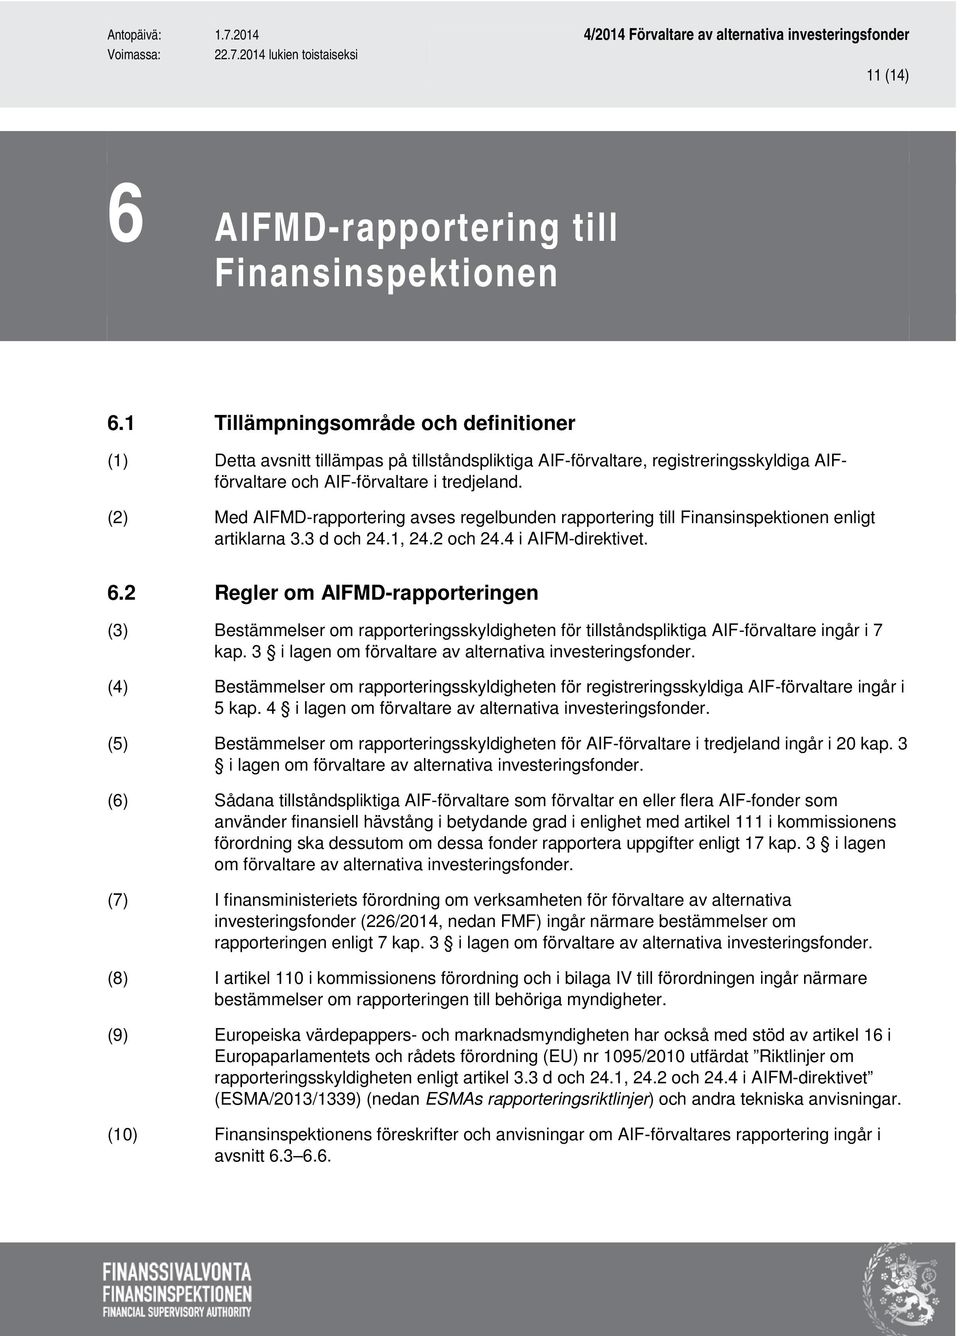 (2) Med AIFMD-rapportering avses regelbunden rapportering till Finansinspektionen enligt artiklarna 3.3 d och 24.1, 24.2 och 24.4 i AIFM-direktivet. 6.